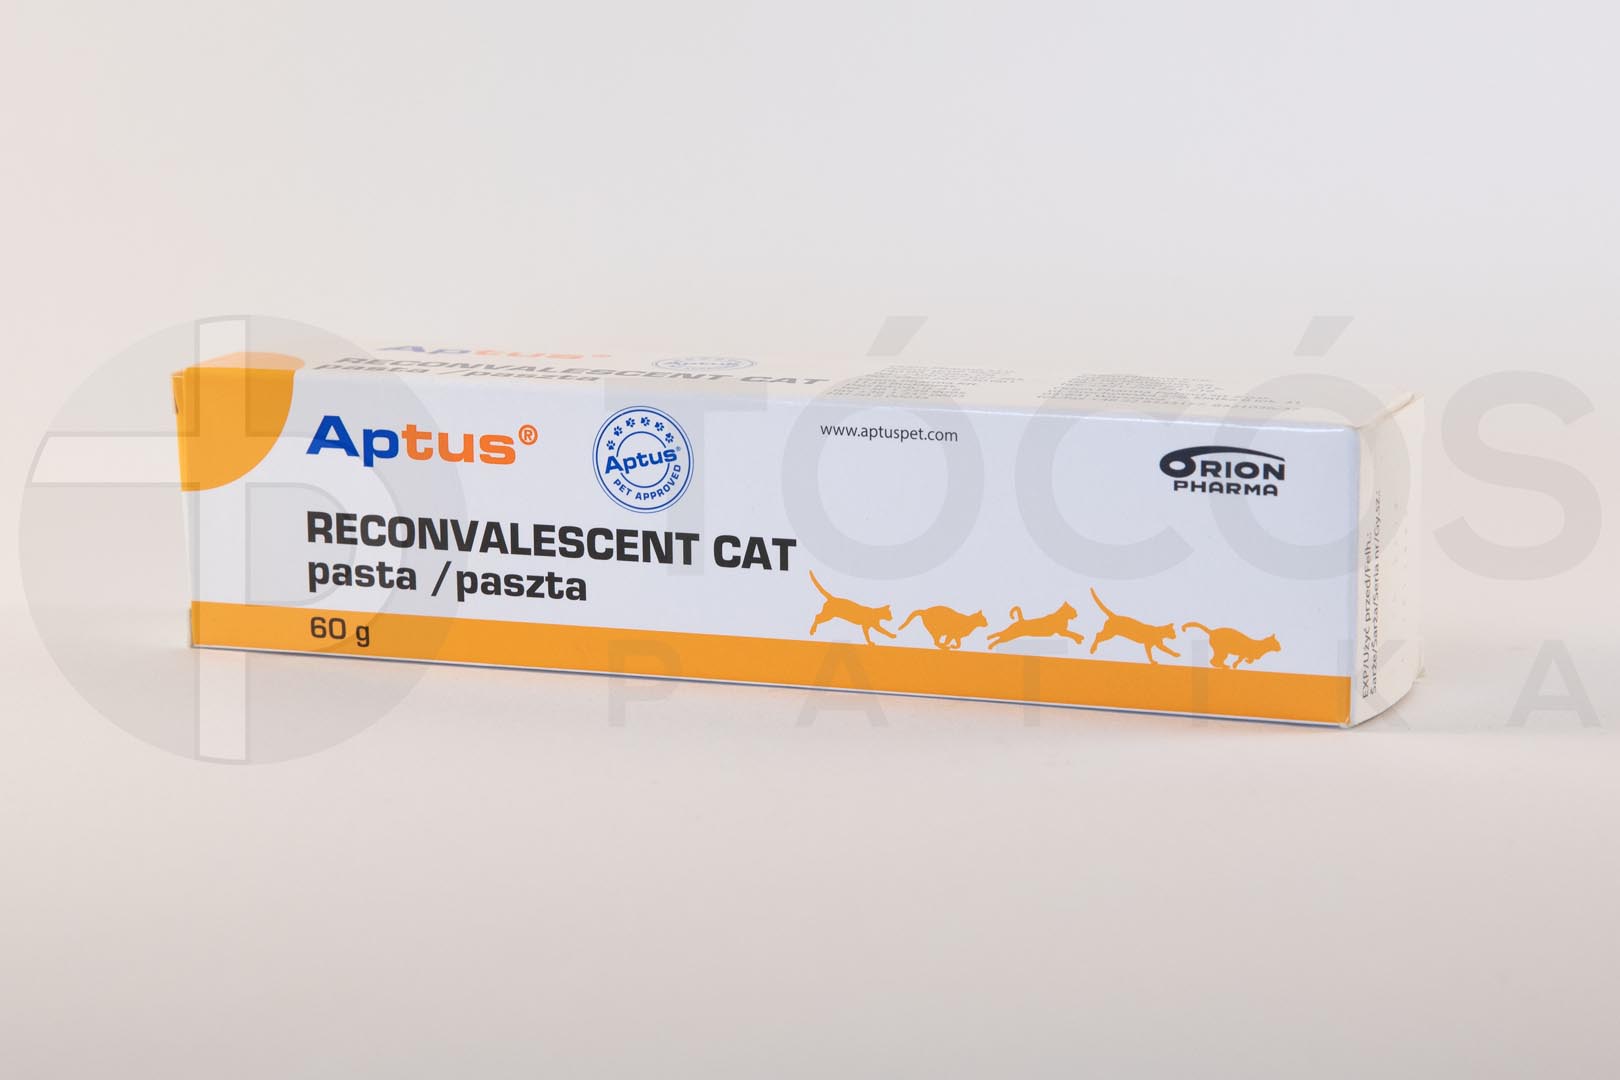 Aptus Reconvalescent paszta Cat a.u.v. 60g